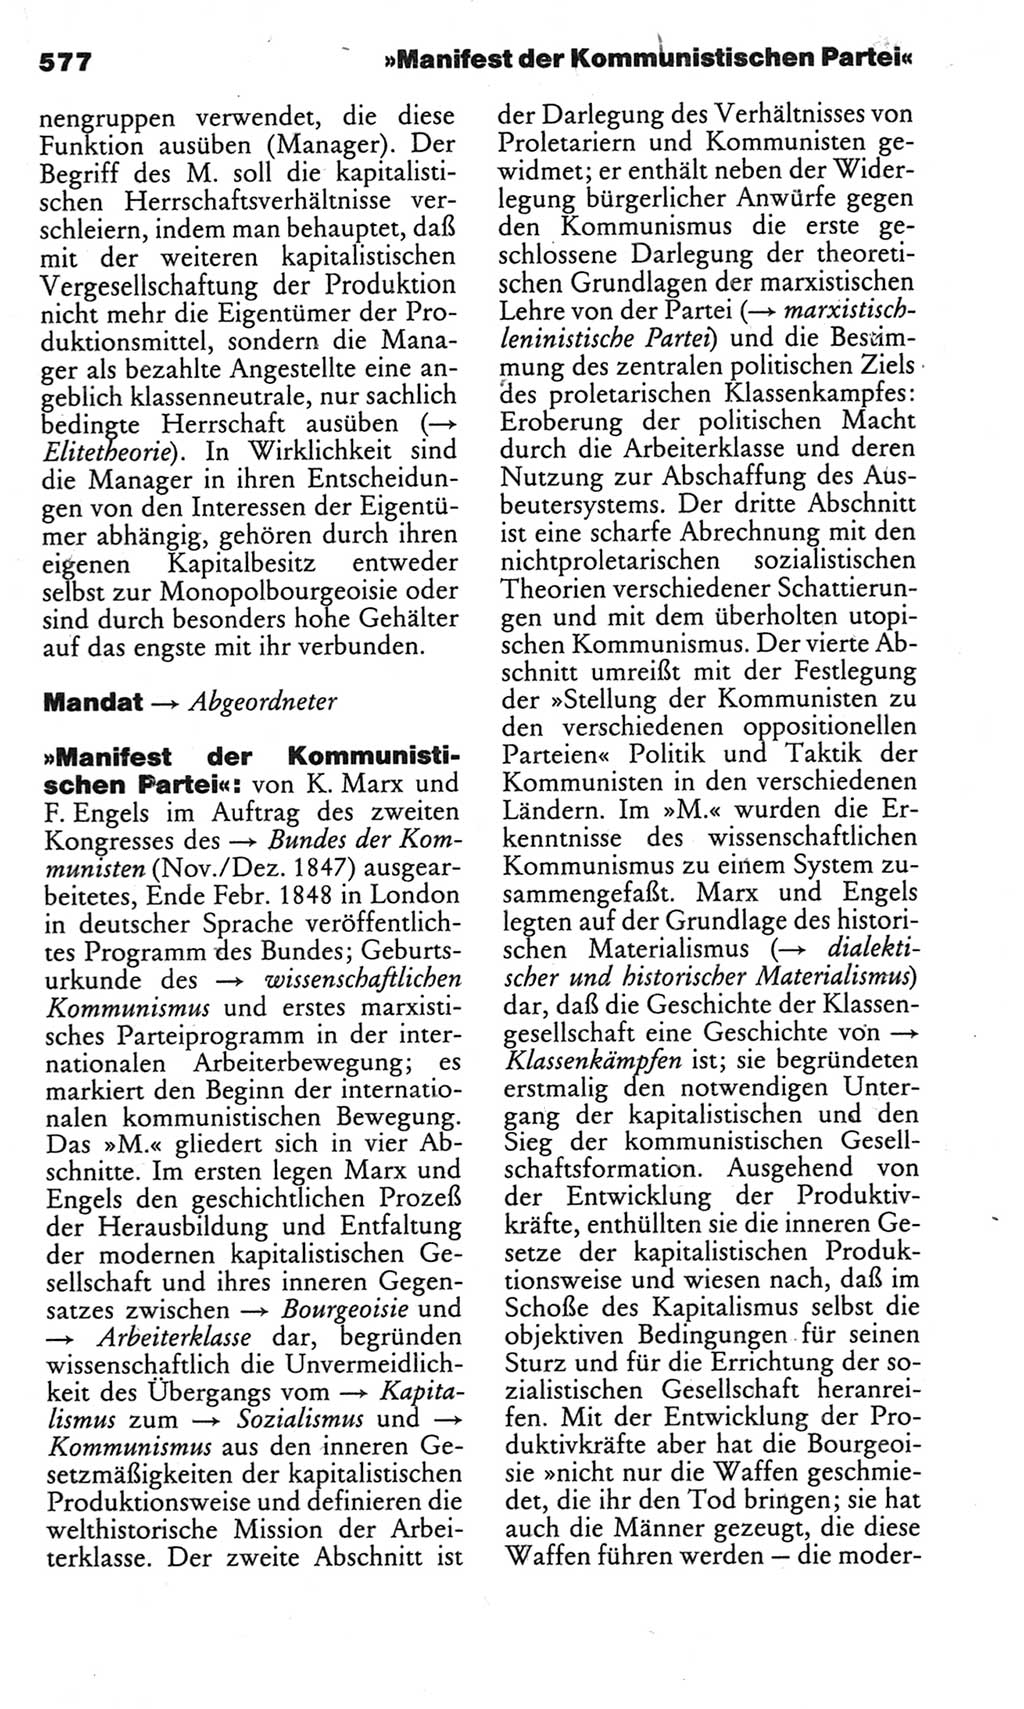 Kleines politisches Wörterbuch [Deutsche Demokratische Republik (DDR)] 1983, Seite 577 (Kl. pol. Wb. DDR 1983, S. 577)